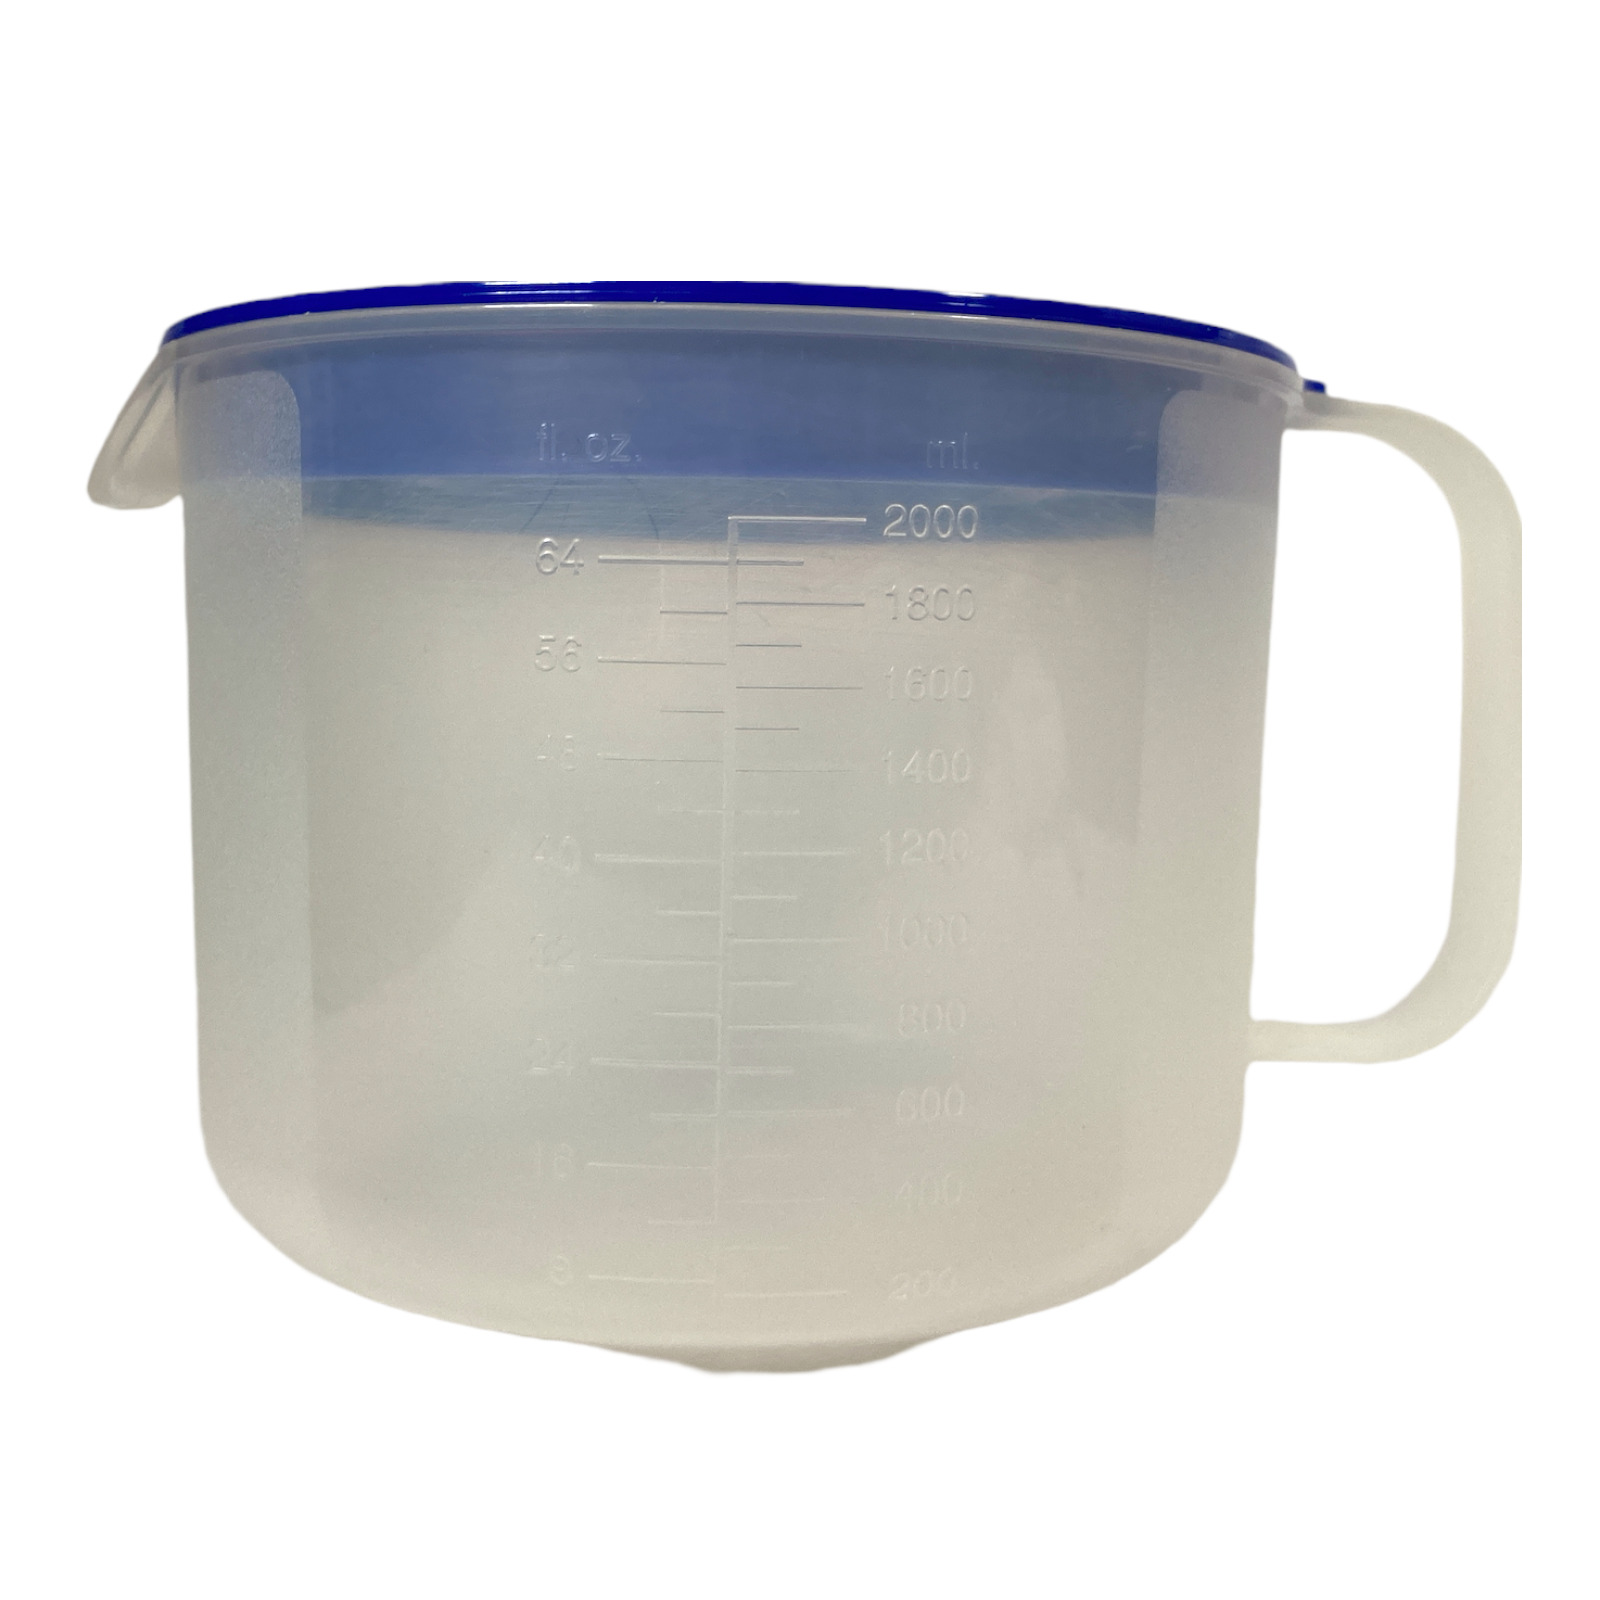 Tupperware Mix n Store 2qt 8 cup measuring bowl 1692E blue lid 1682D seal 733